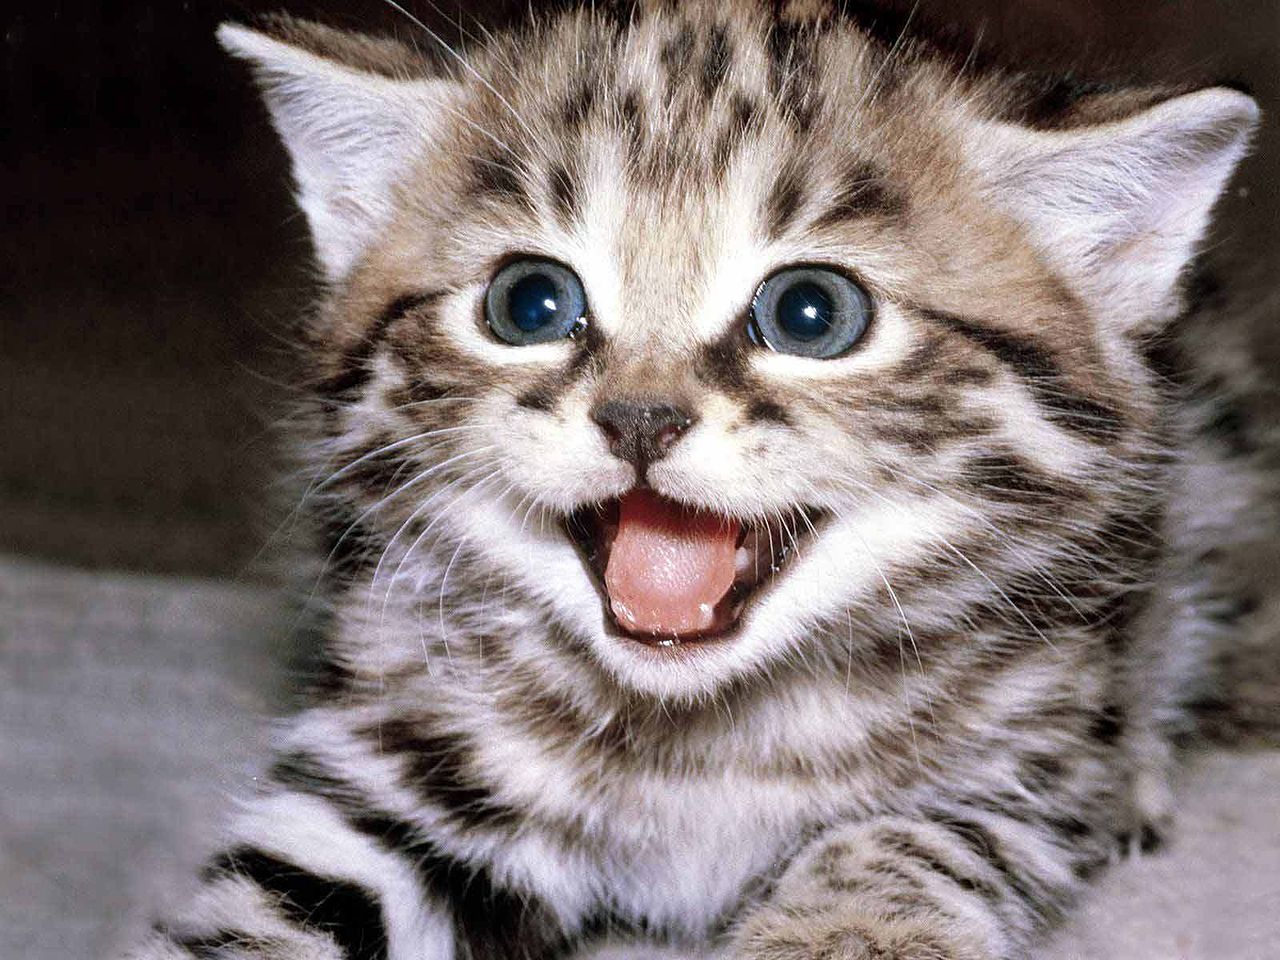 File:Cute-kittens-12929201-1600-1200.jpg - Wikimedia Commons